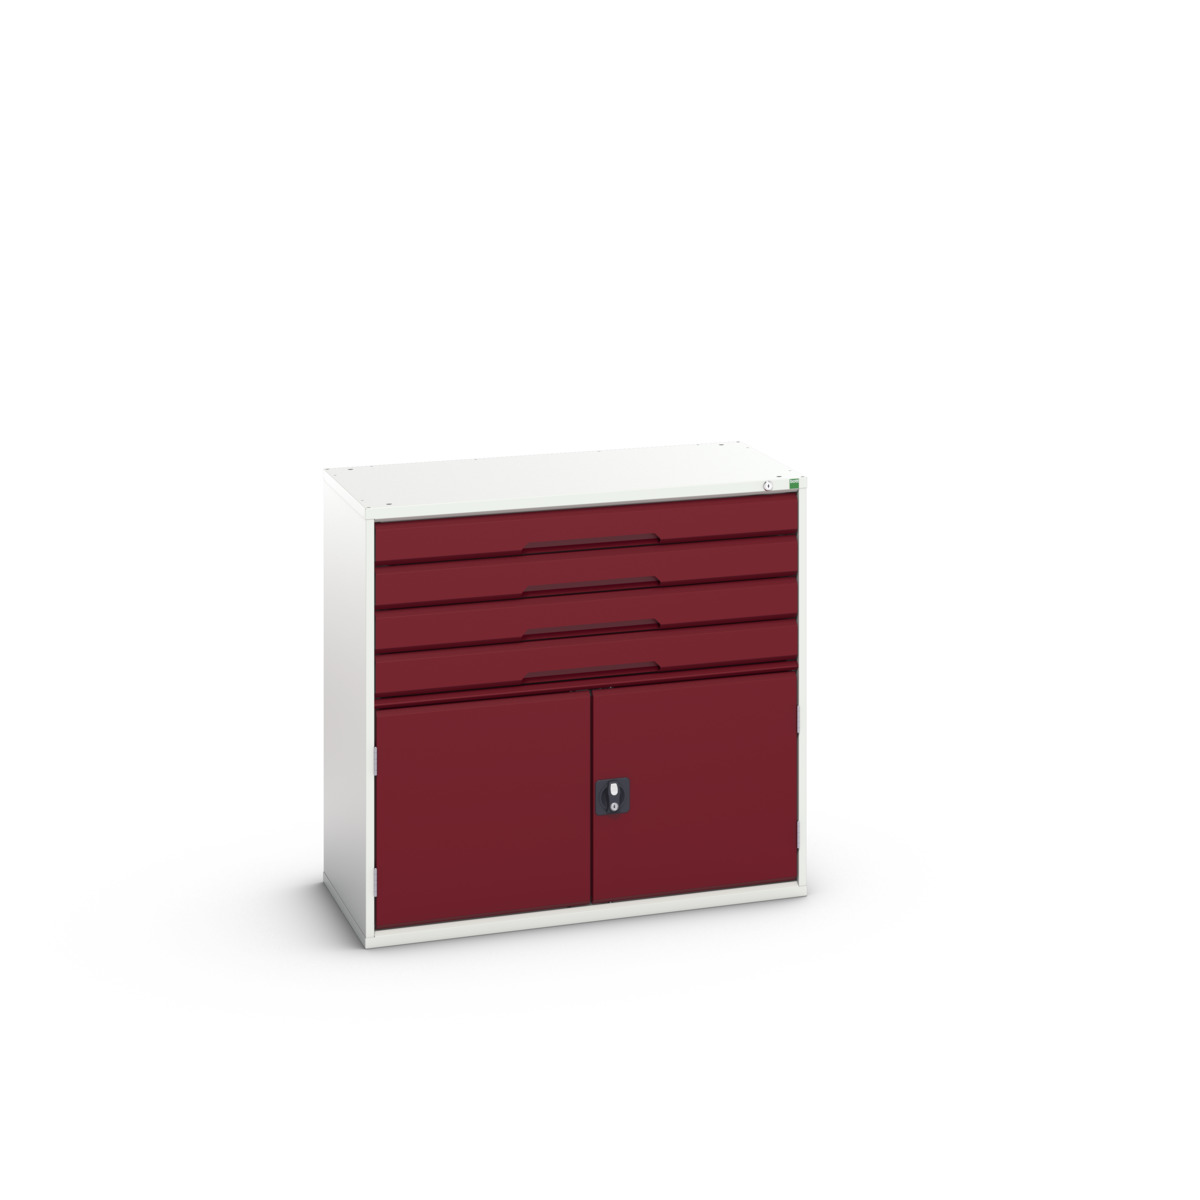 16925565.24 - verso drawer-door cabinet